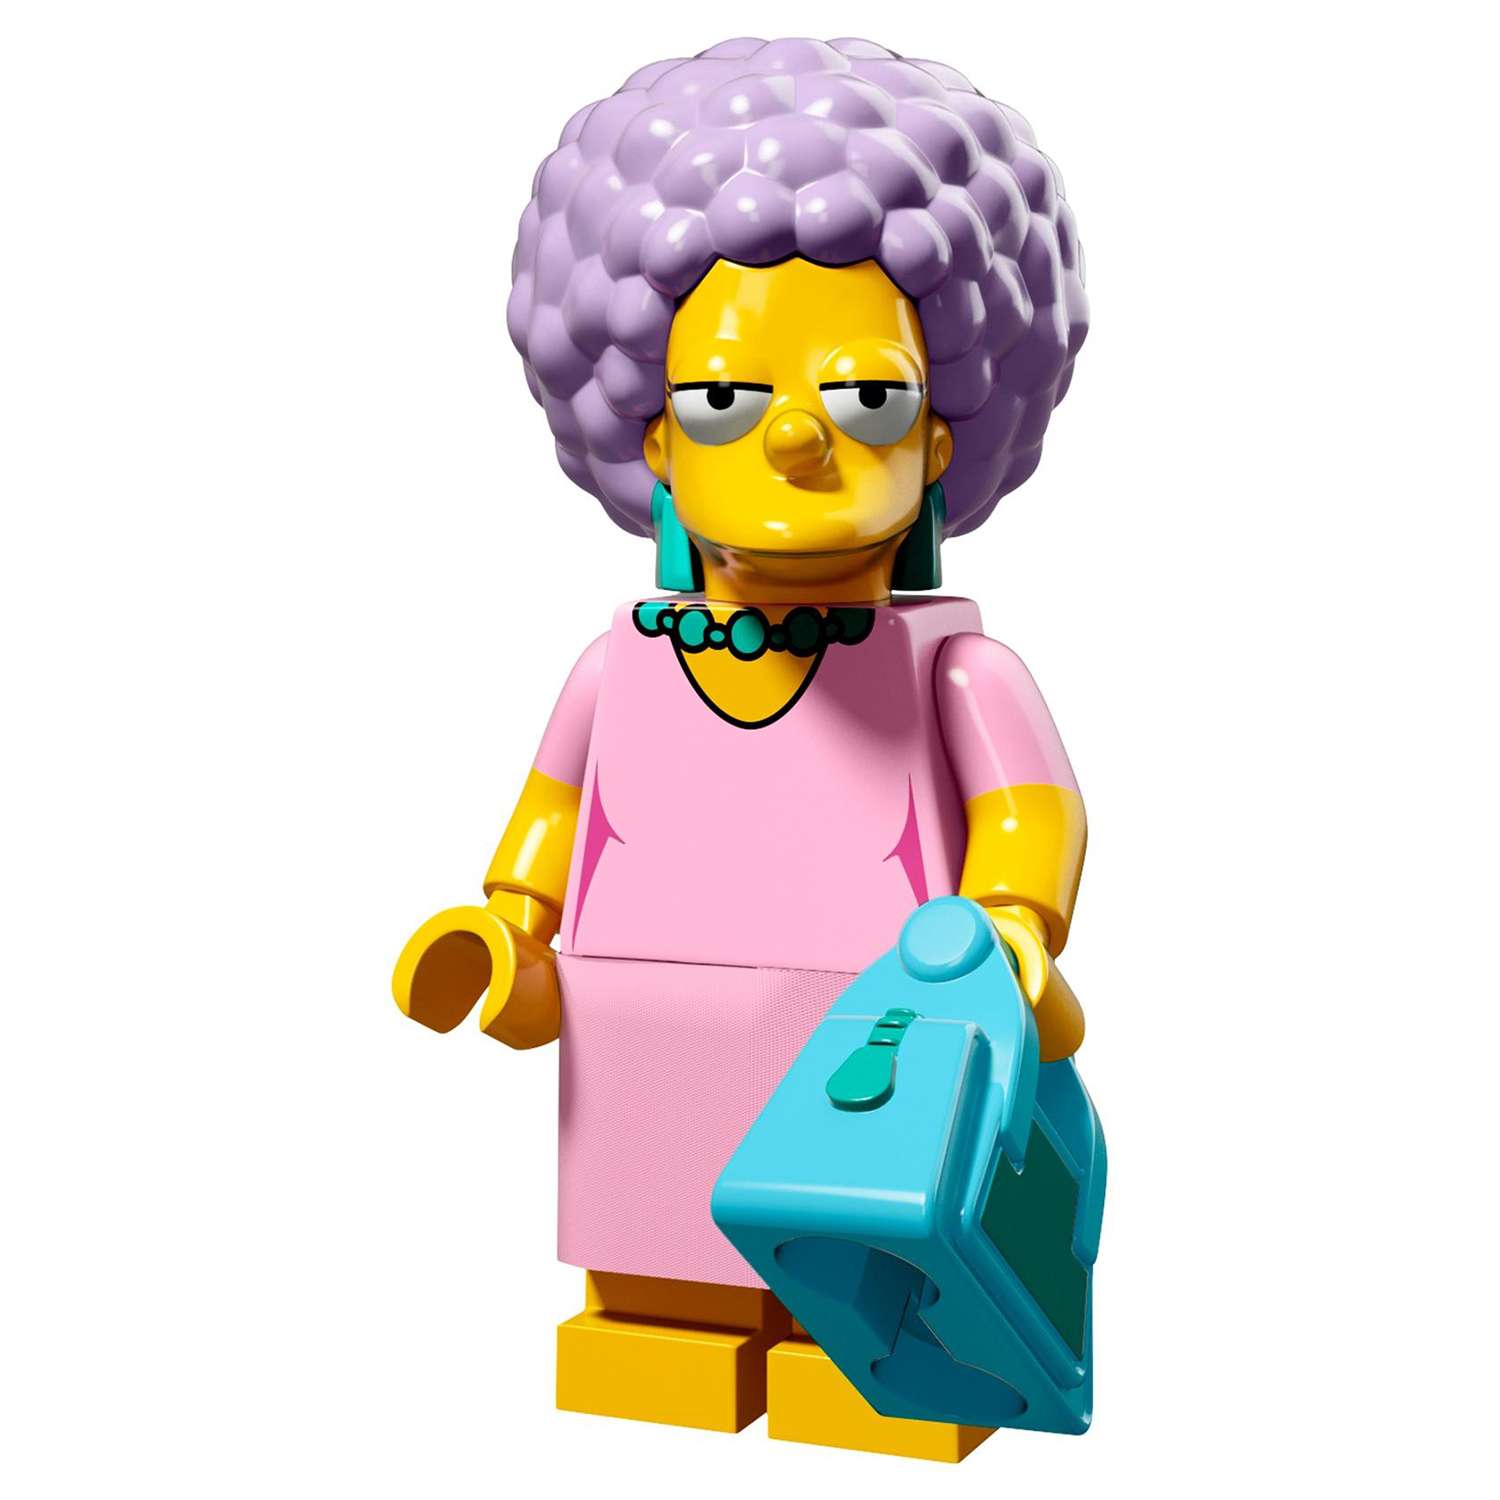 Конструктор LEGO Minifigures Минифигурки LEGO® Серия «Симпсоны» 2.0 (71009) - фото 16